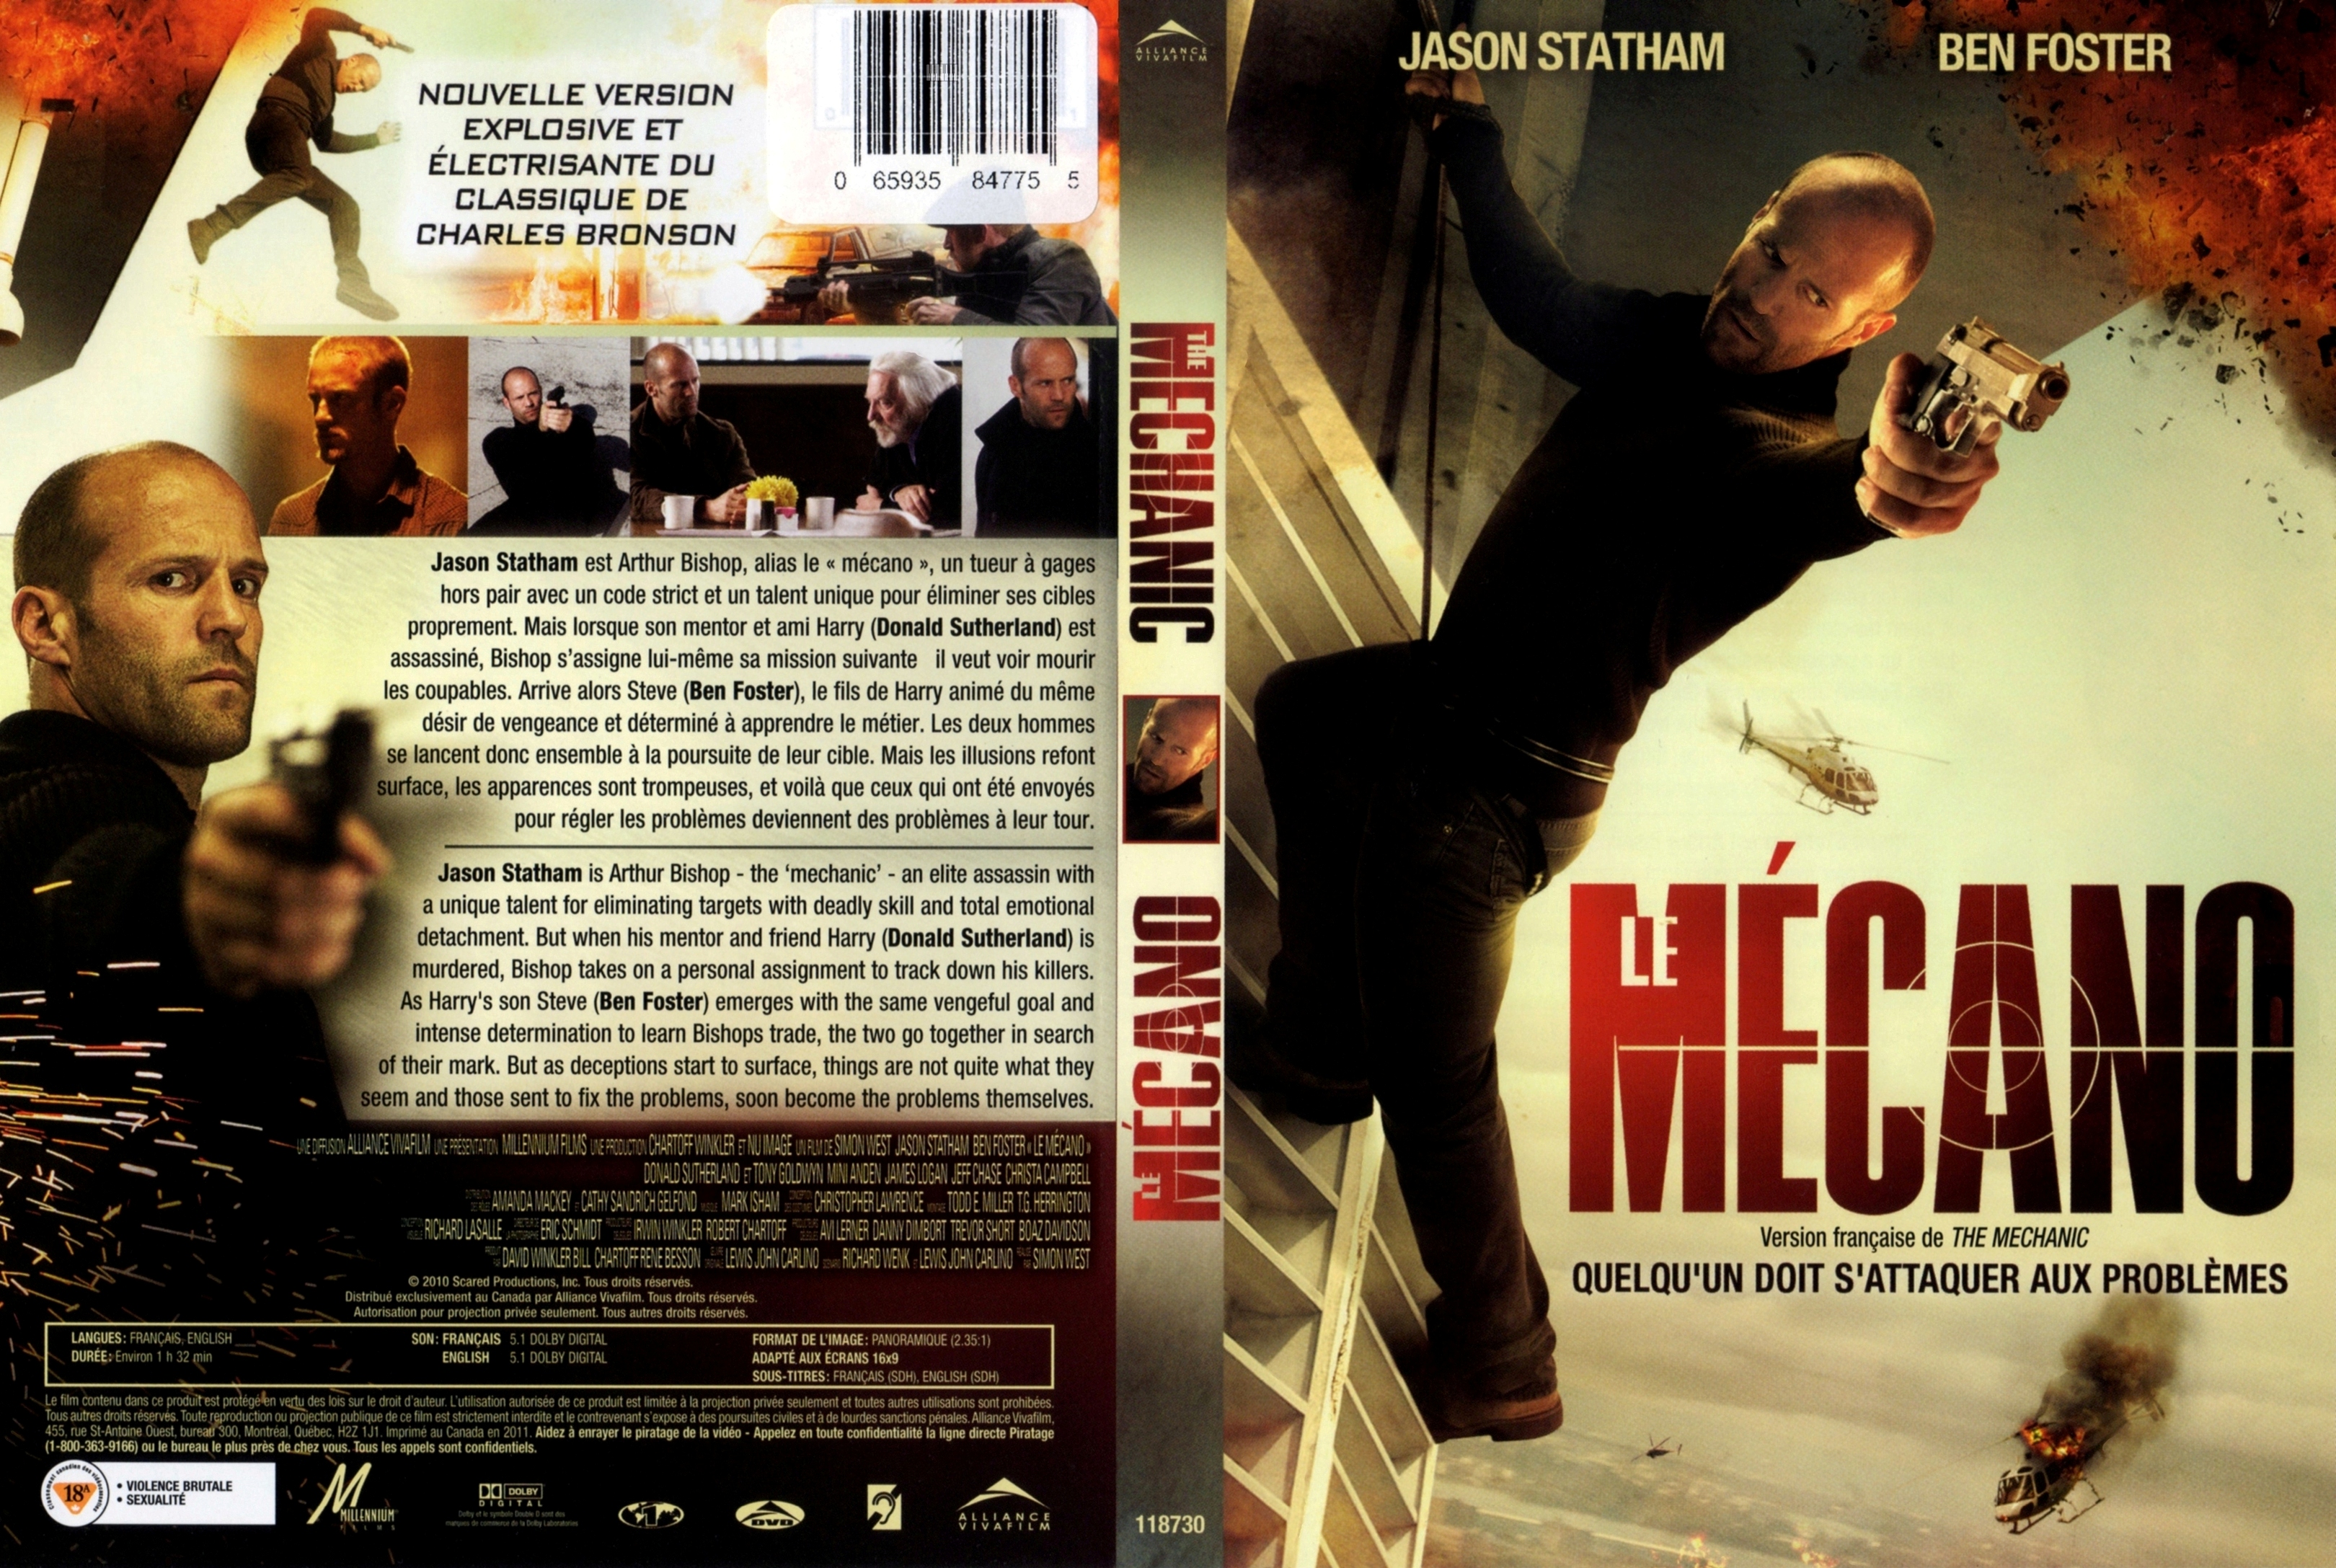 Jaquette DVD Le mcano - Mechanic (Canadienne)